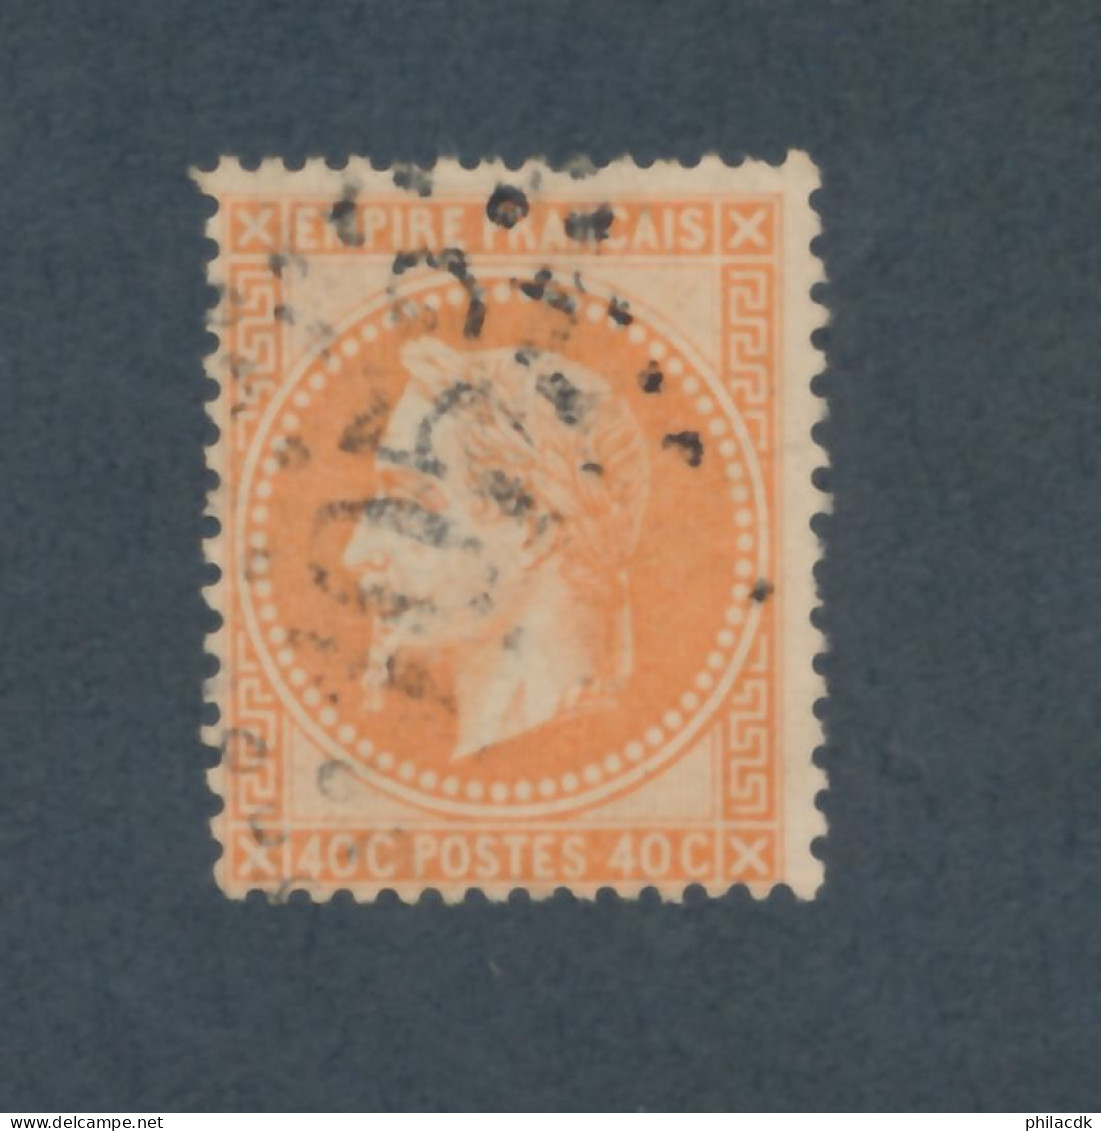 FRANCE - N° 31 OBLITERE AVEC GC 1053 CLERMONT FERRAND - COTE : 25€ - 1868 - 1863-1870 Napoleone III Con Gli Allori